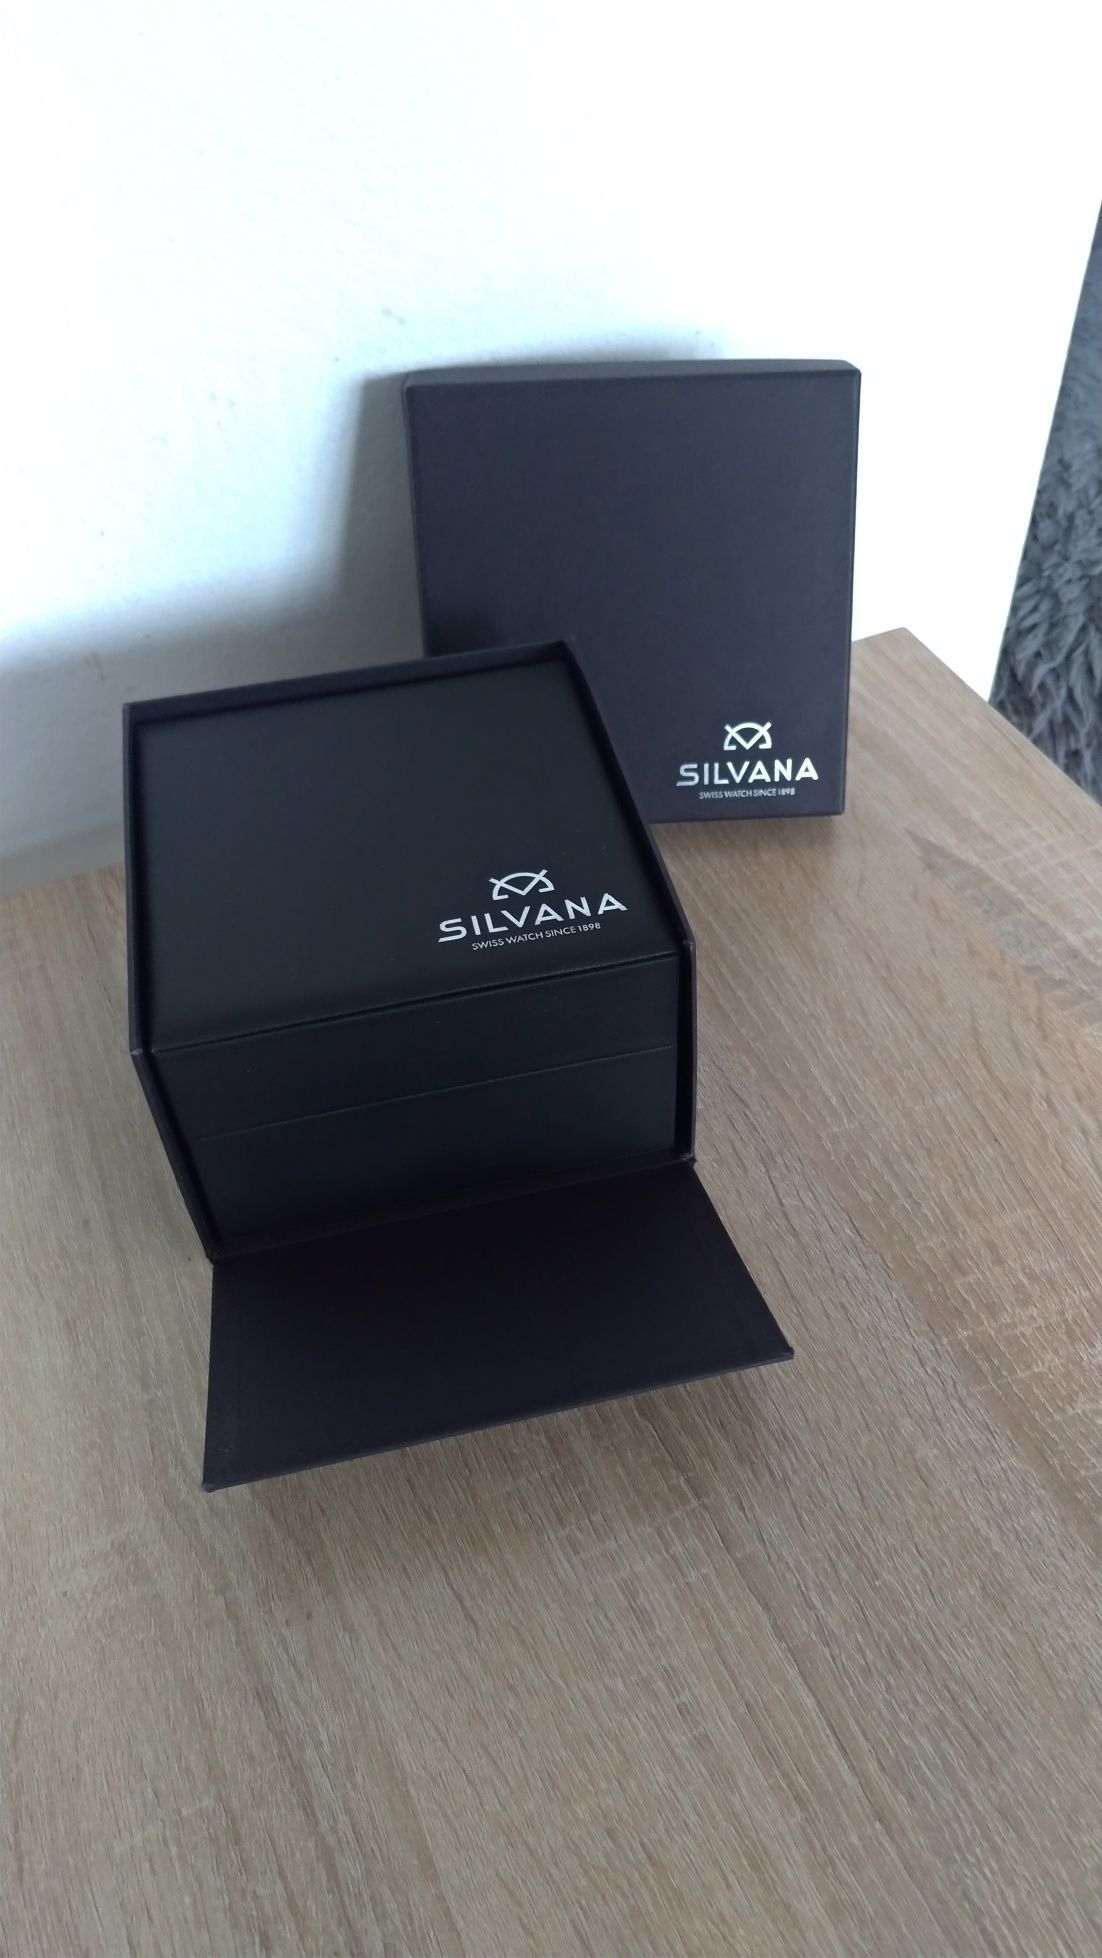 Pudełko na zegarek firmy Silvana